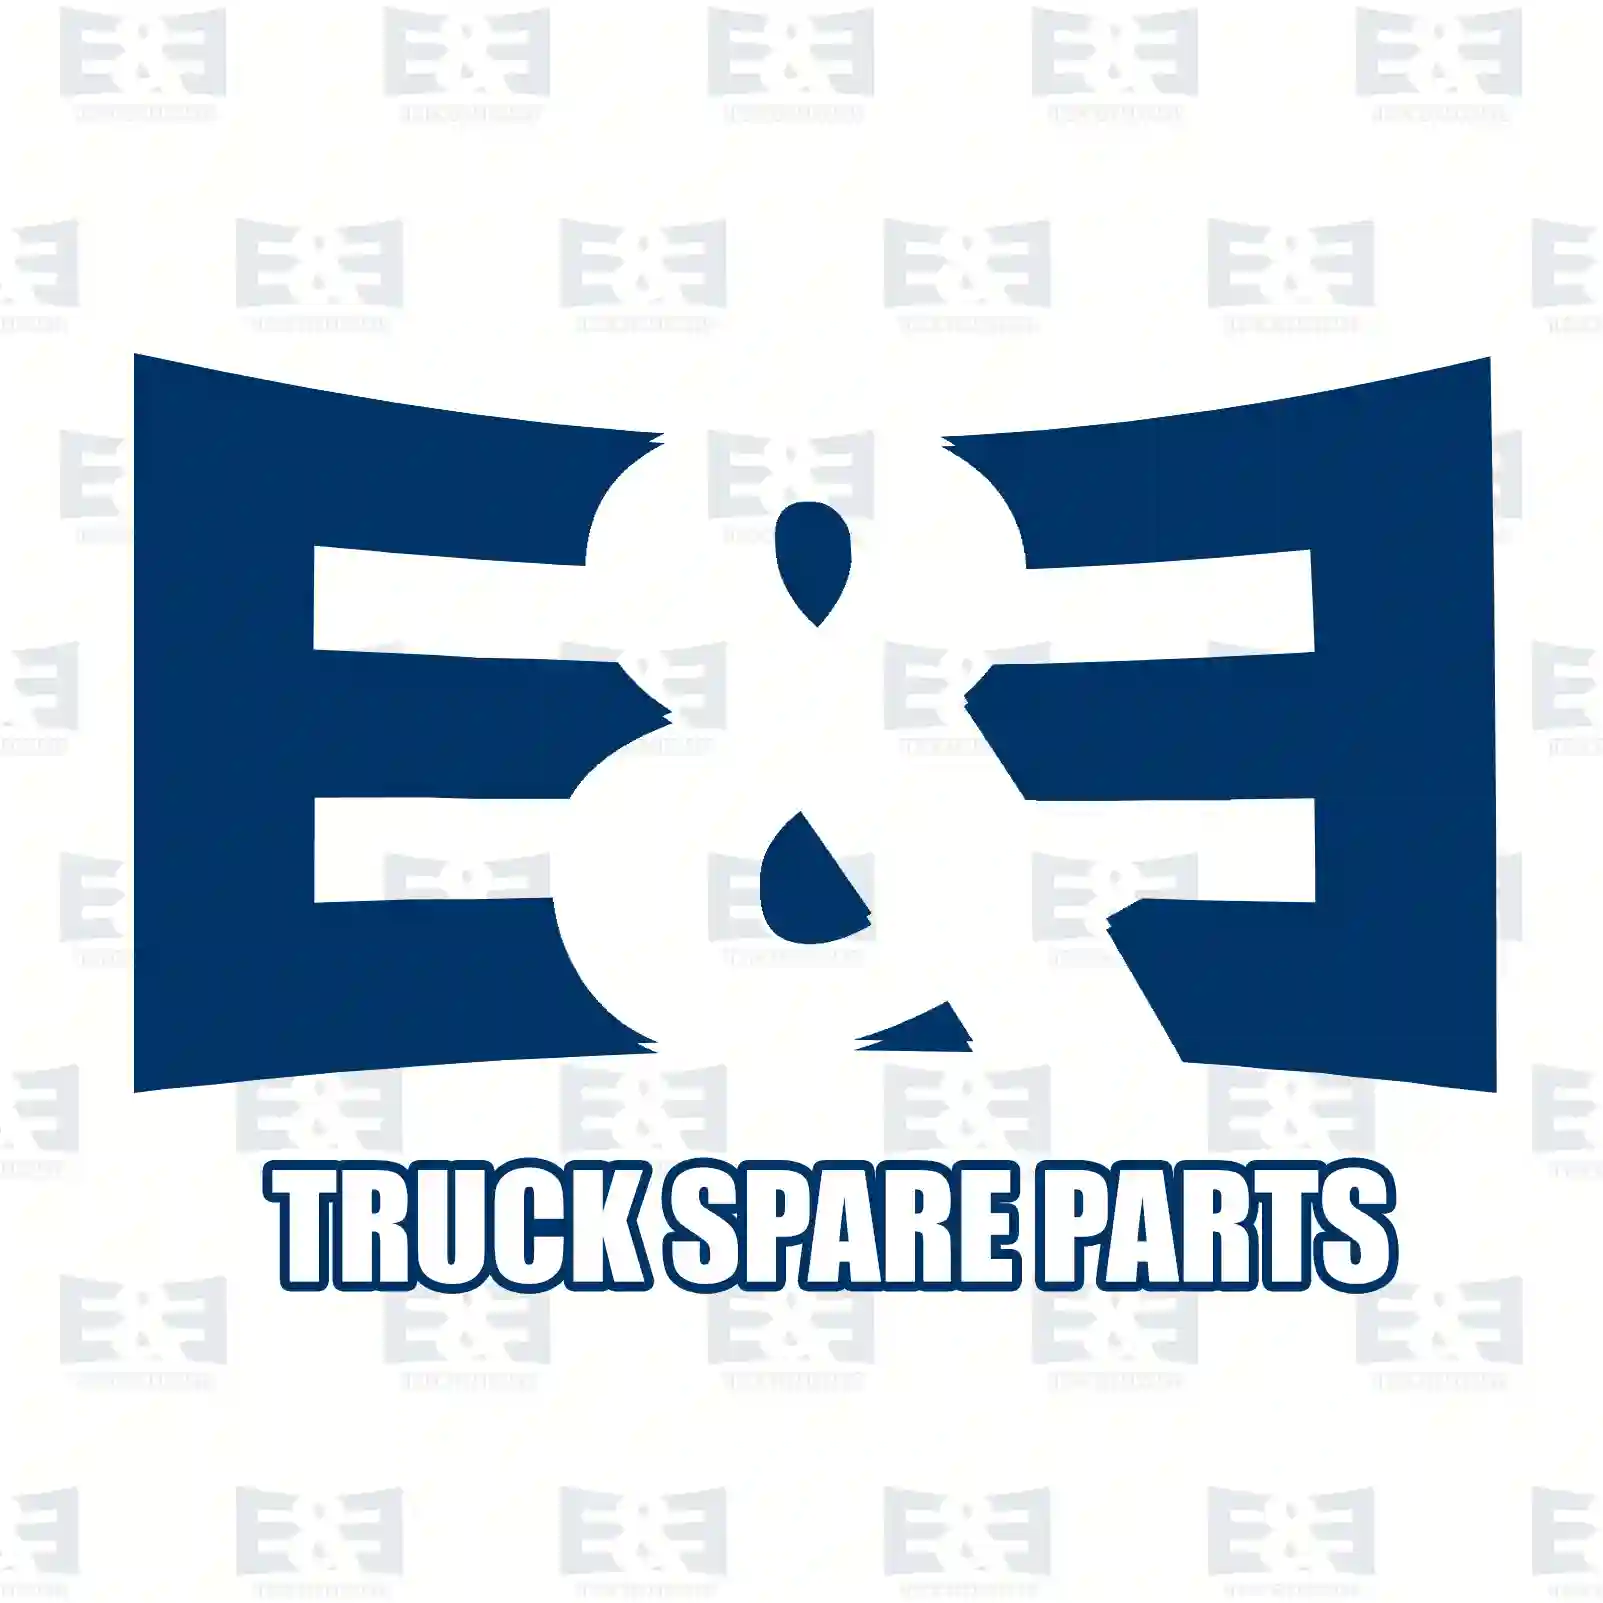 Clutch kit, 2E2288978, 81300059003 ||  2E2288978 E&E Truck Spare Parts | Truck Spare Parts, Auotomotive Spare Parts Clutch kit, 2E2288978, 81300059003 ||  2E2288978 E&E Truck Spare Parts | Truck Spare Parts, Auotomotive Spare Parts